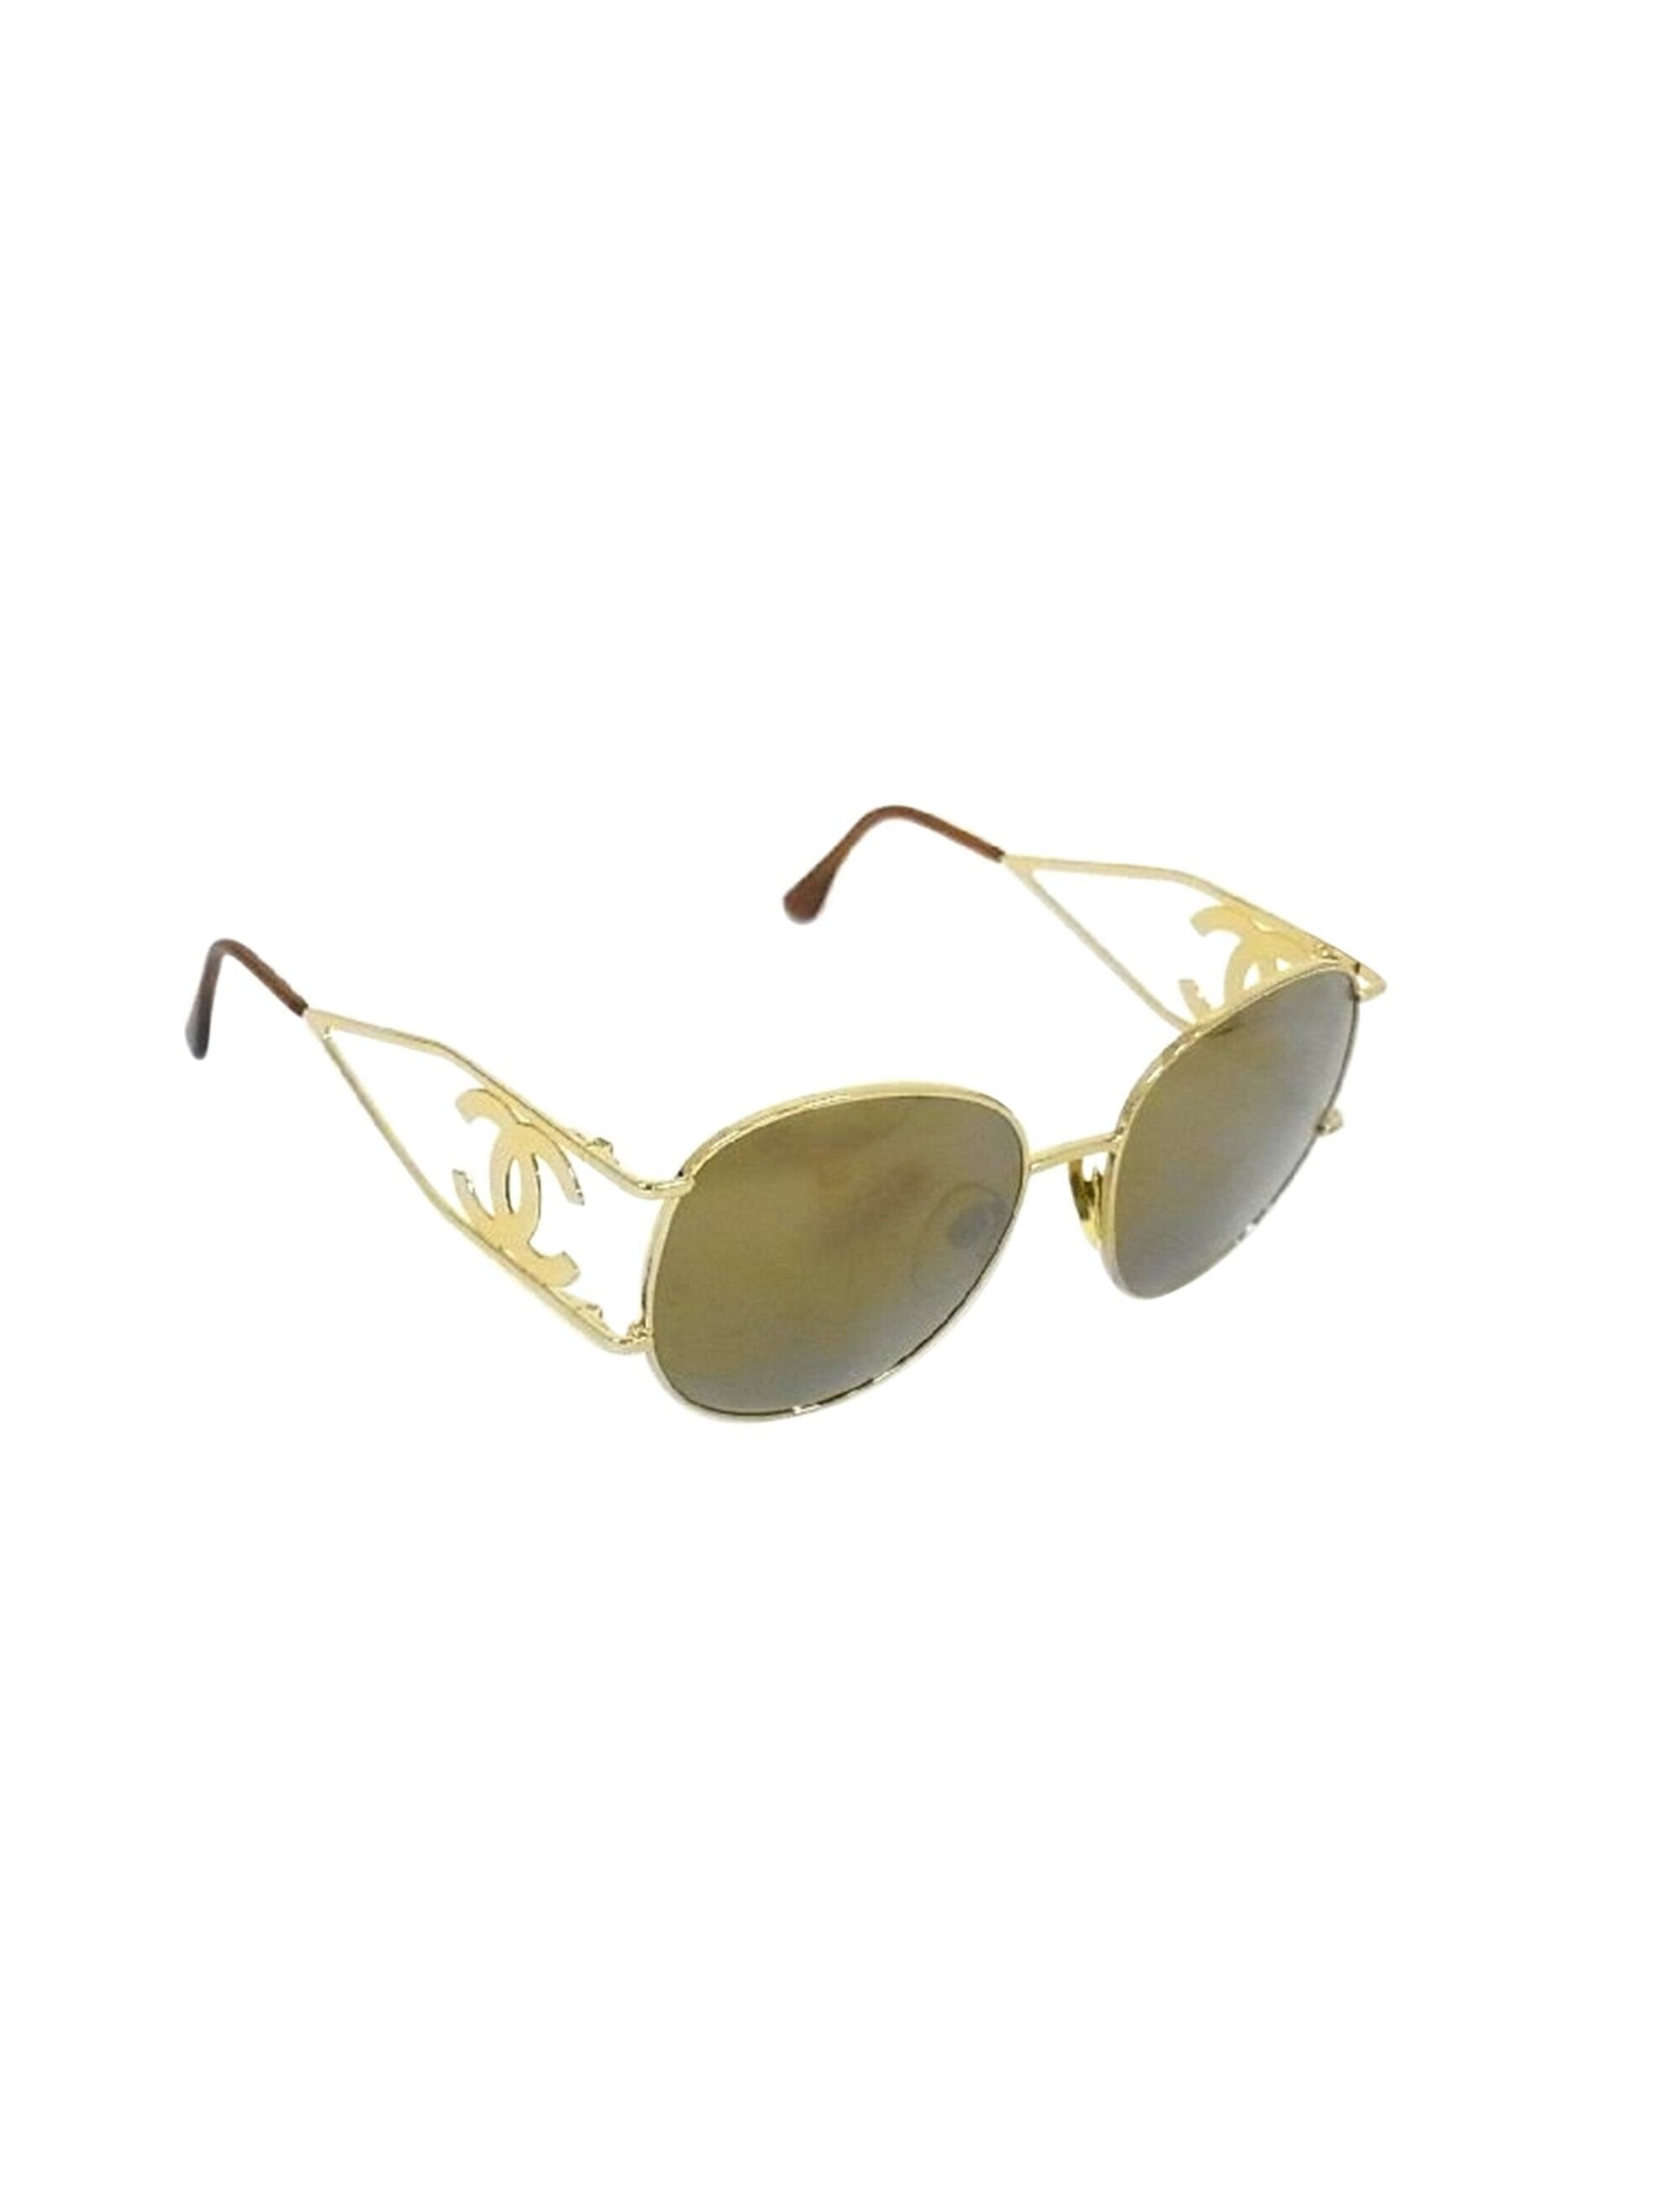 Chanel GoldBlack Aviator Shield Sunglasses  The Lux Portal